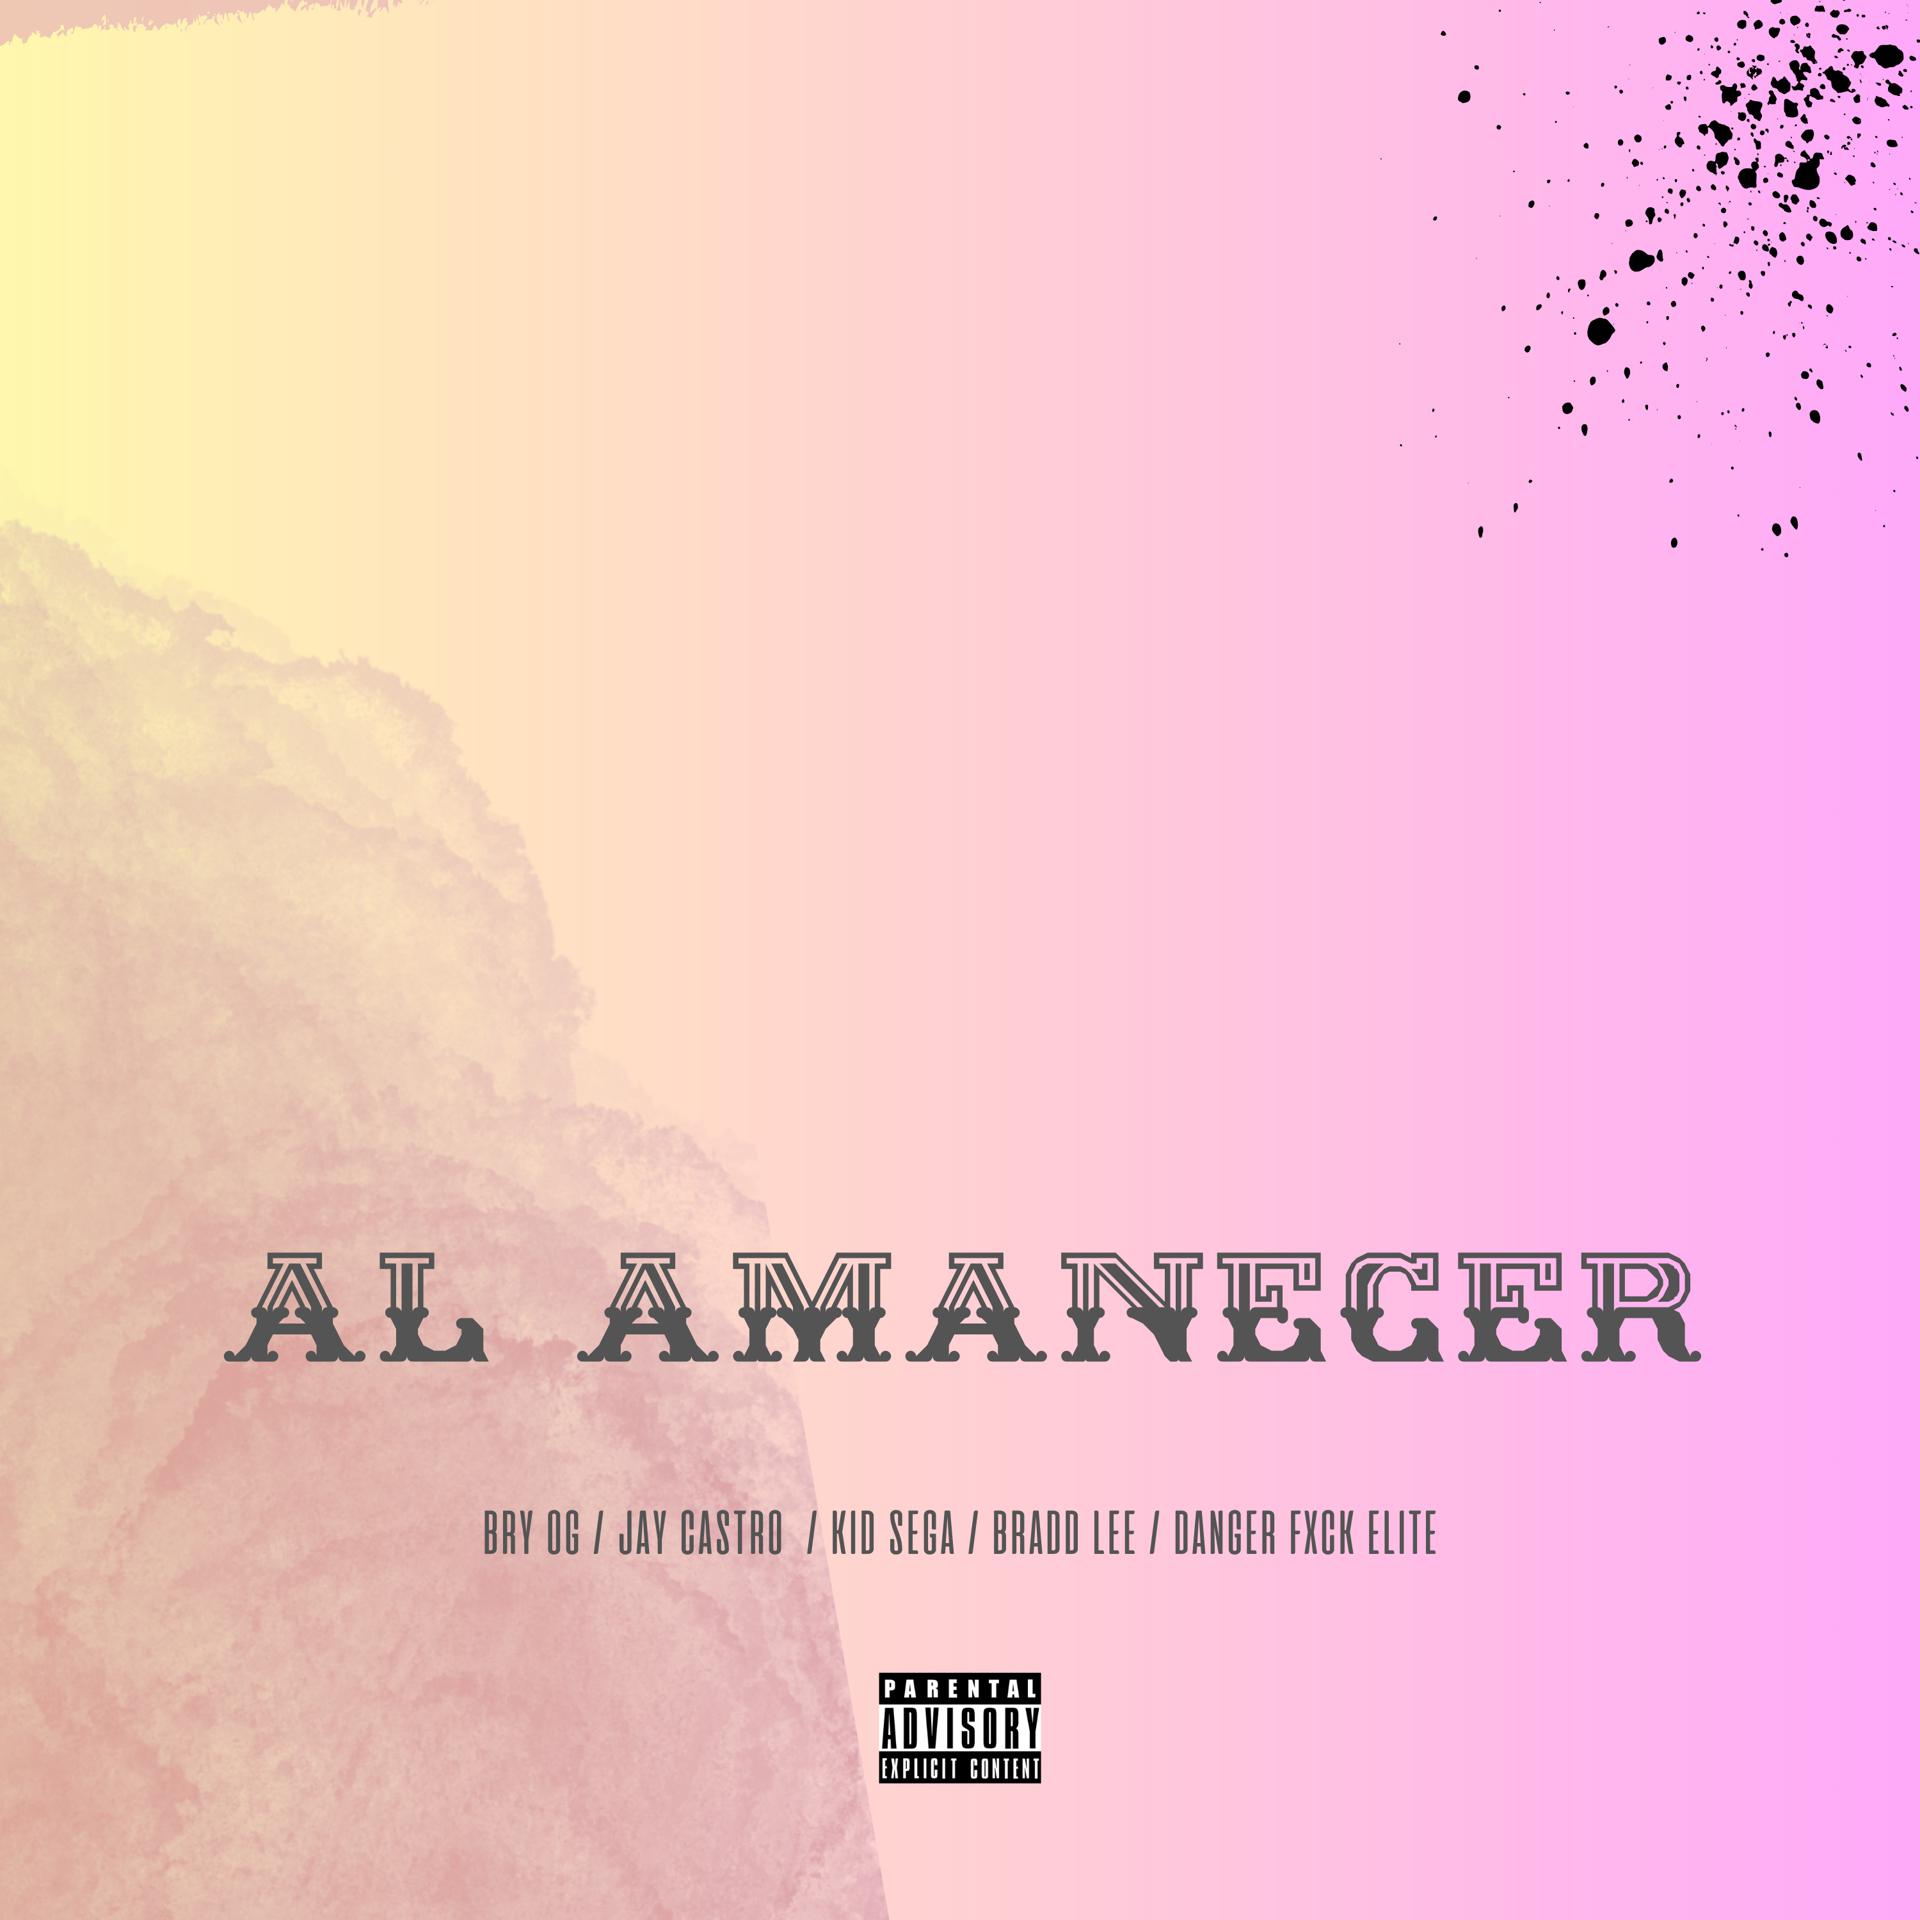 Постер альбома Al Amanecer